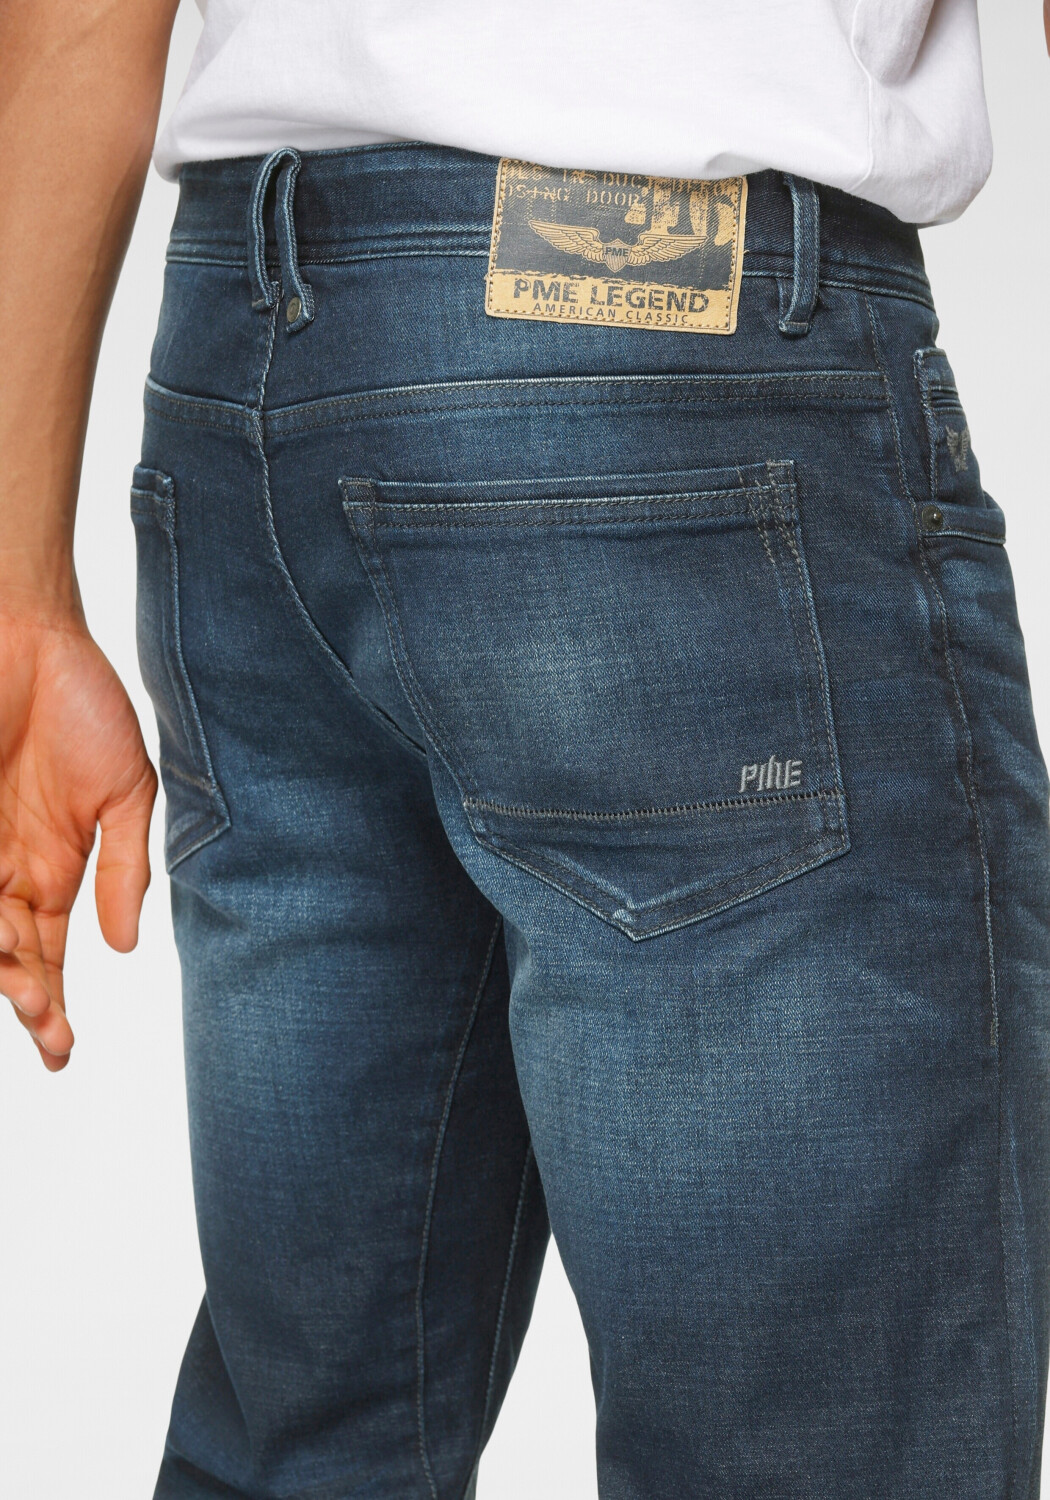 Legend ab Jeans bei Slim dark Fit 49,99 Tailwheel wash € | Preisvergleich PME